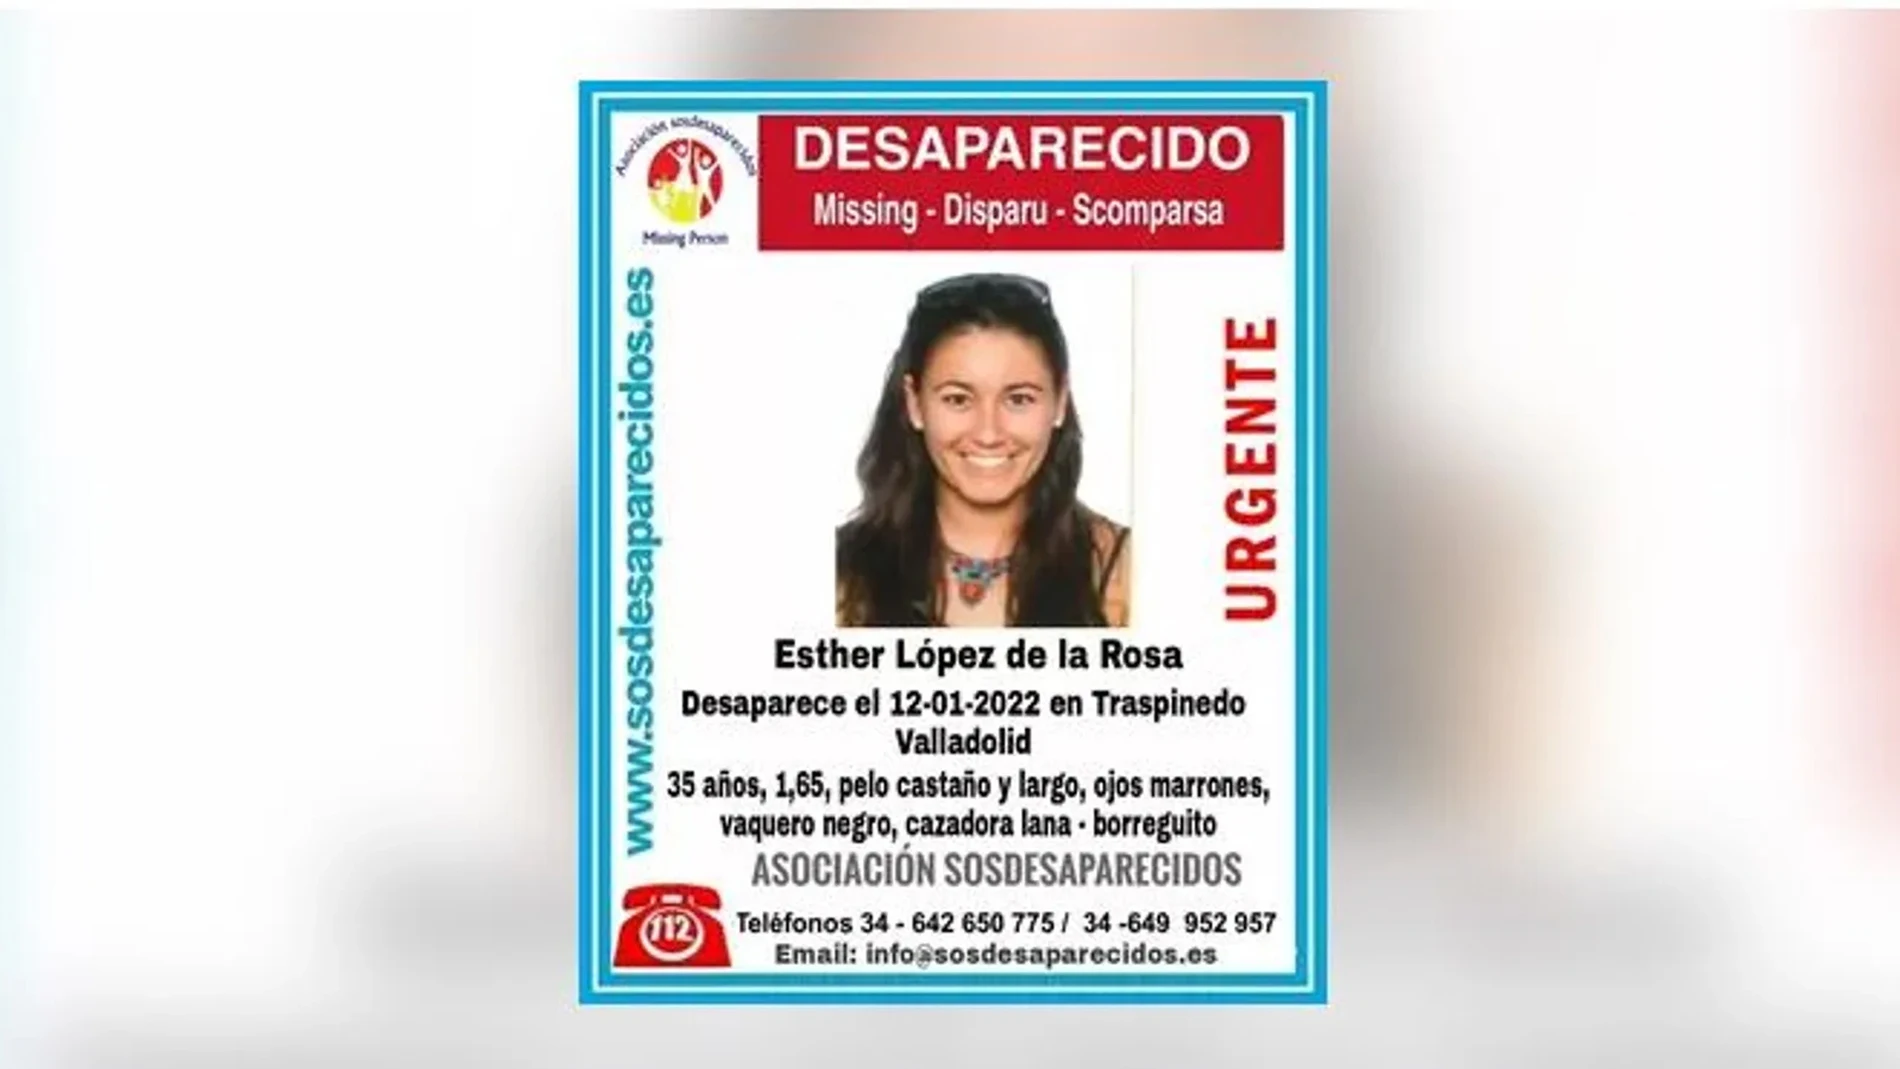 A3 Noticias Fin de Semana (30-01-22) Las pistas e incógnitas por resolver en la desaparición de Esther López de la Rosa en Traspinedo, Valladolid